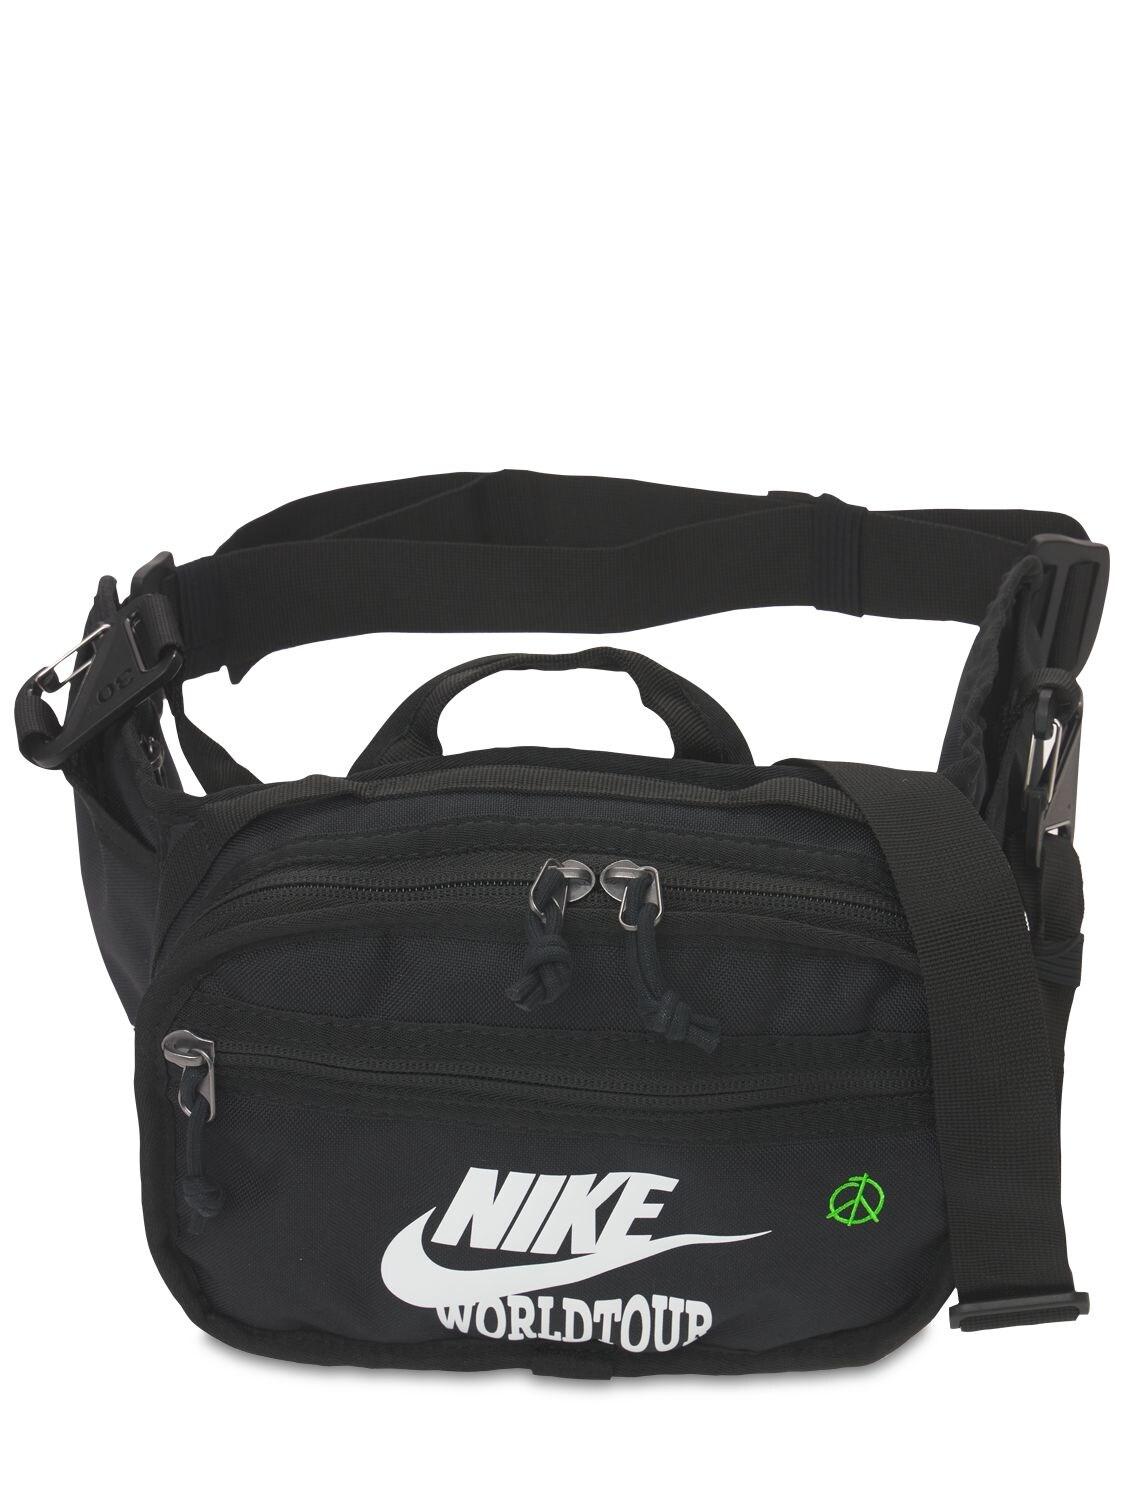 Nike World Tour Belt Bag in Black for Men - Lyst